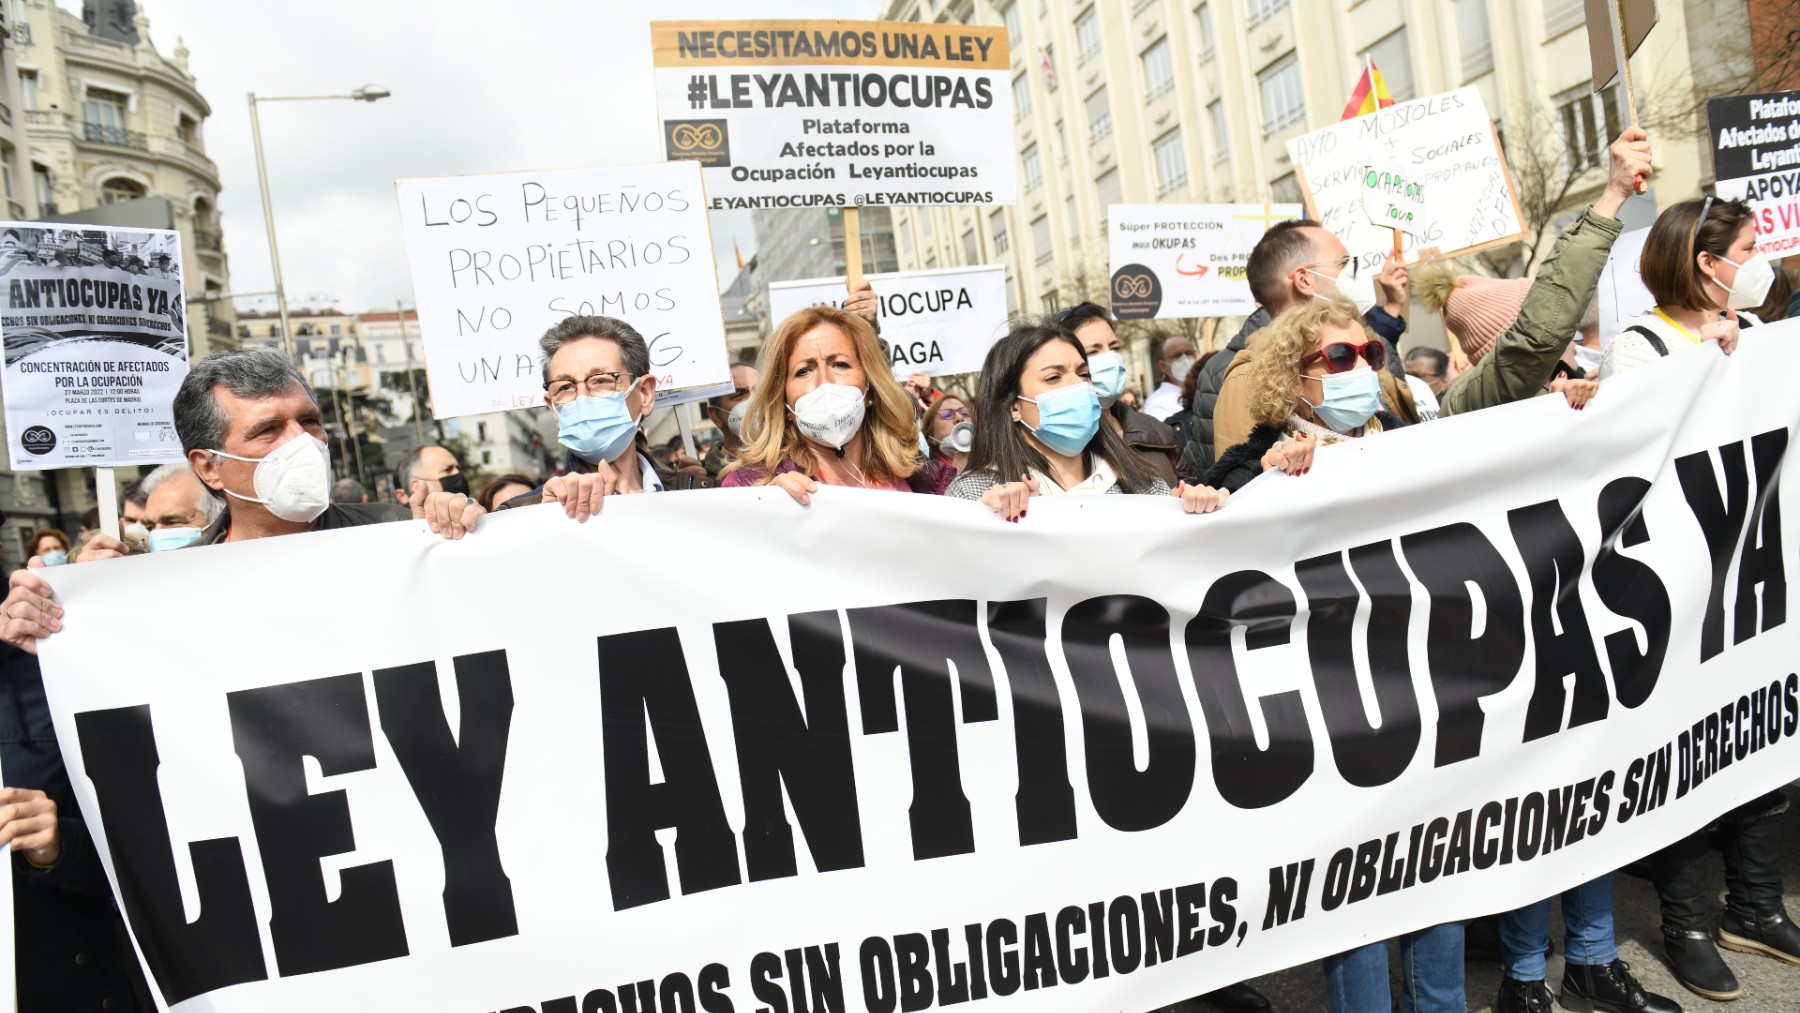 Manifestación contra la okupación en Madrid.